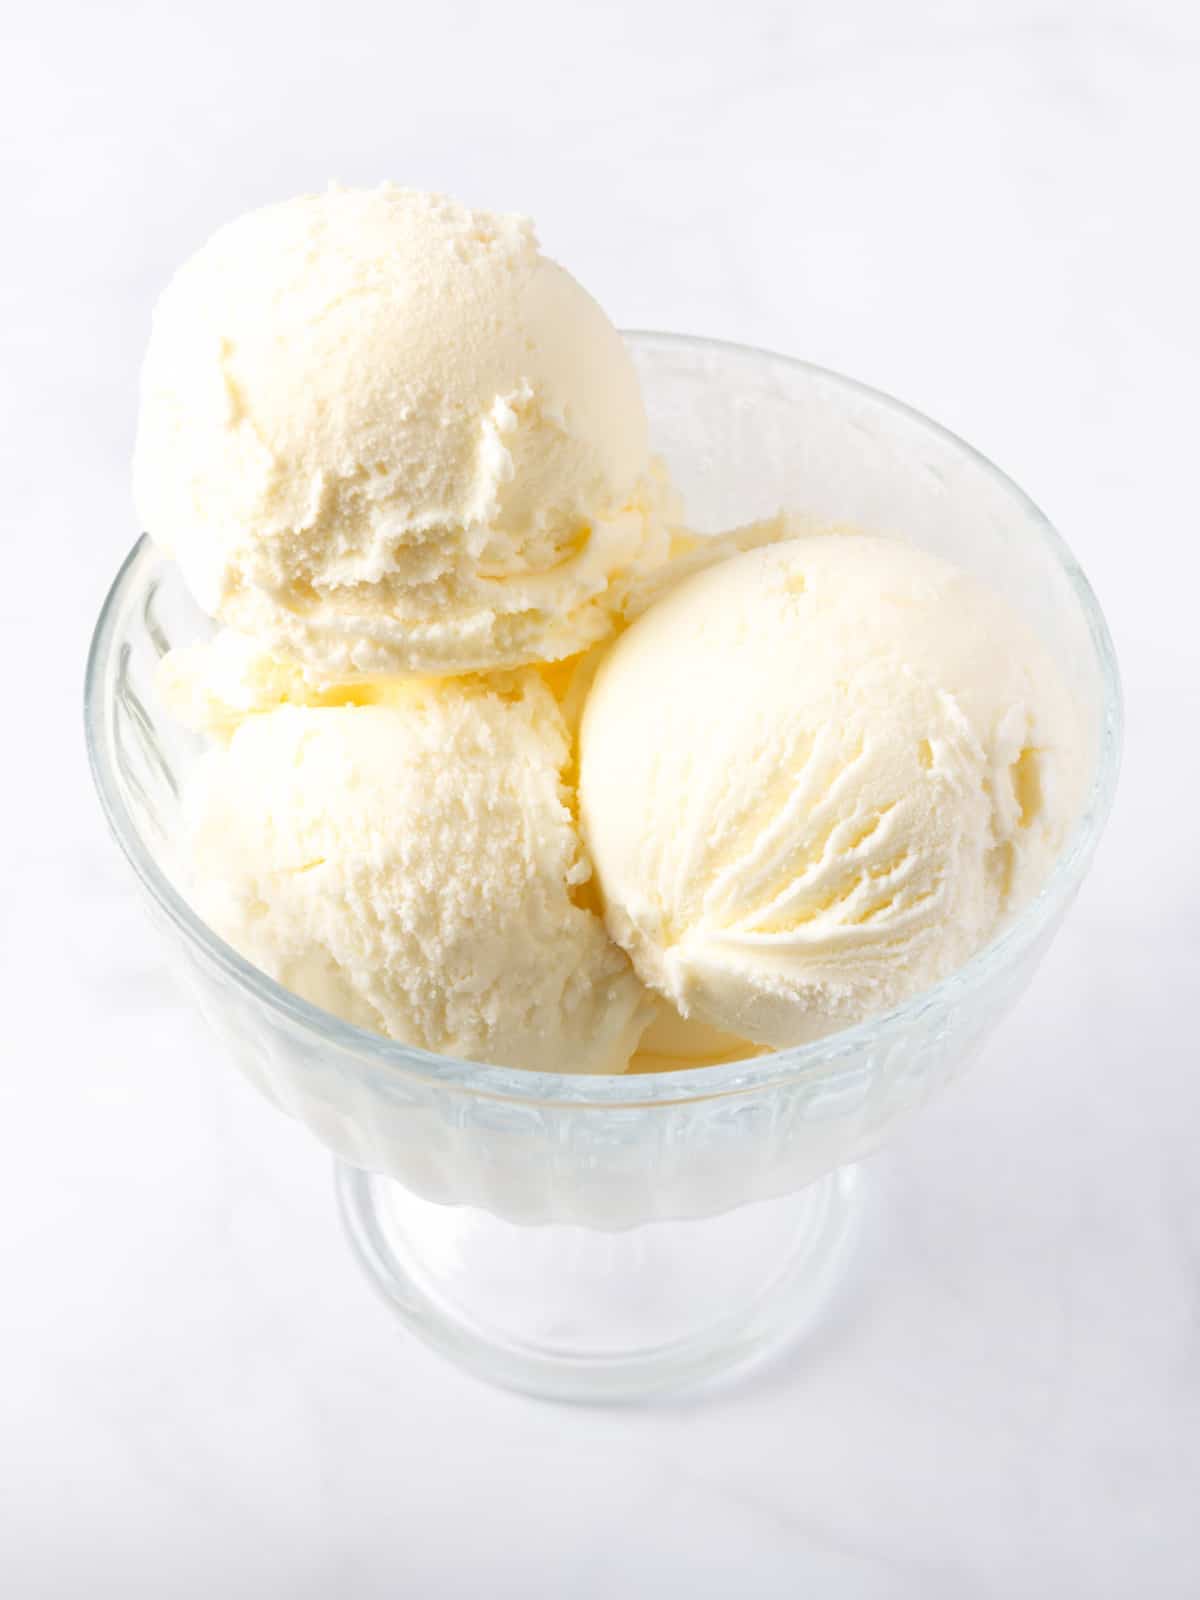 vanilla ice cream scoops in a glass bowl